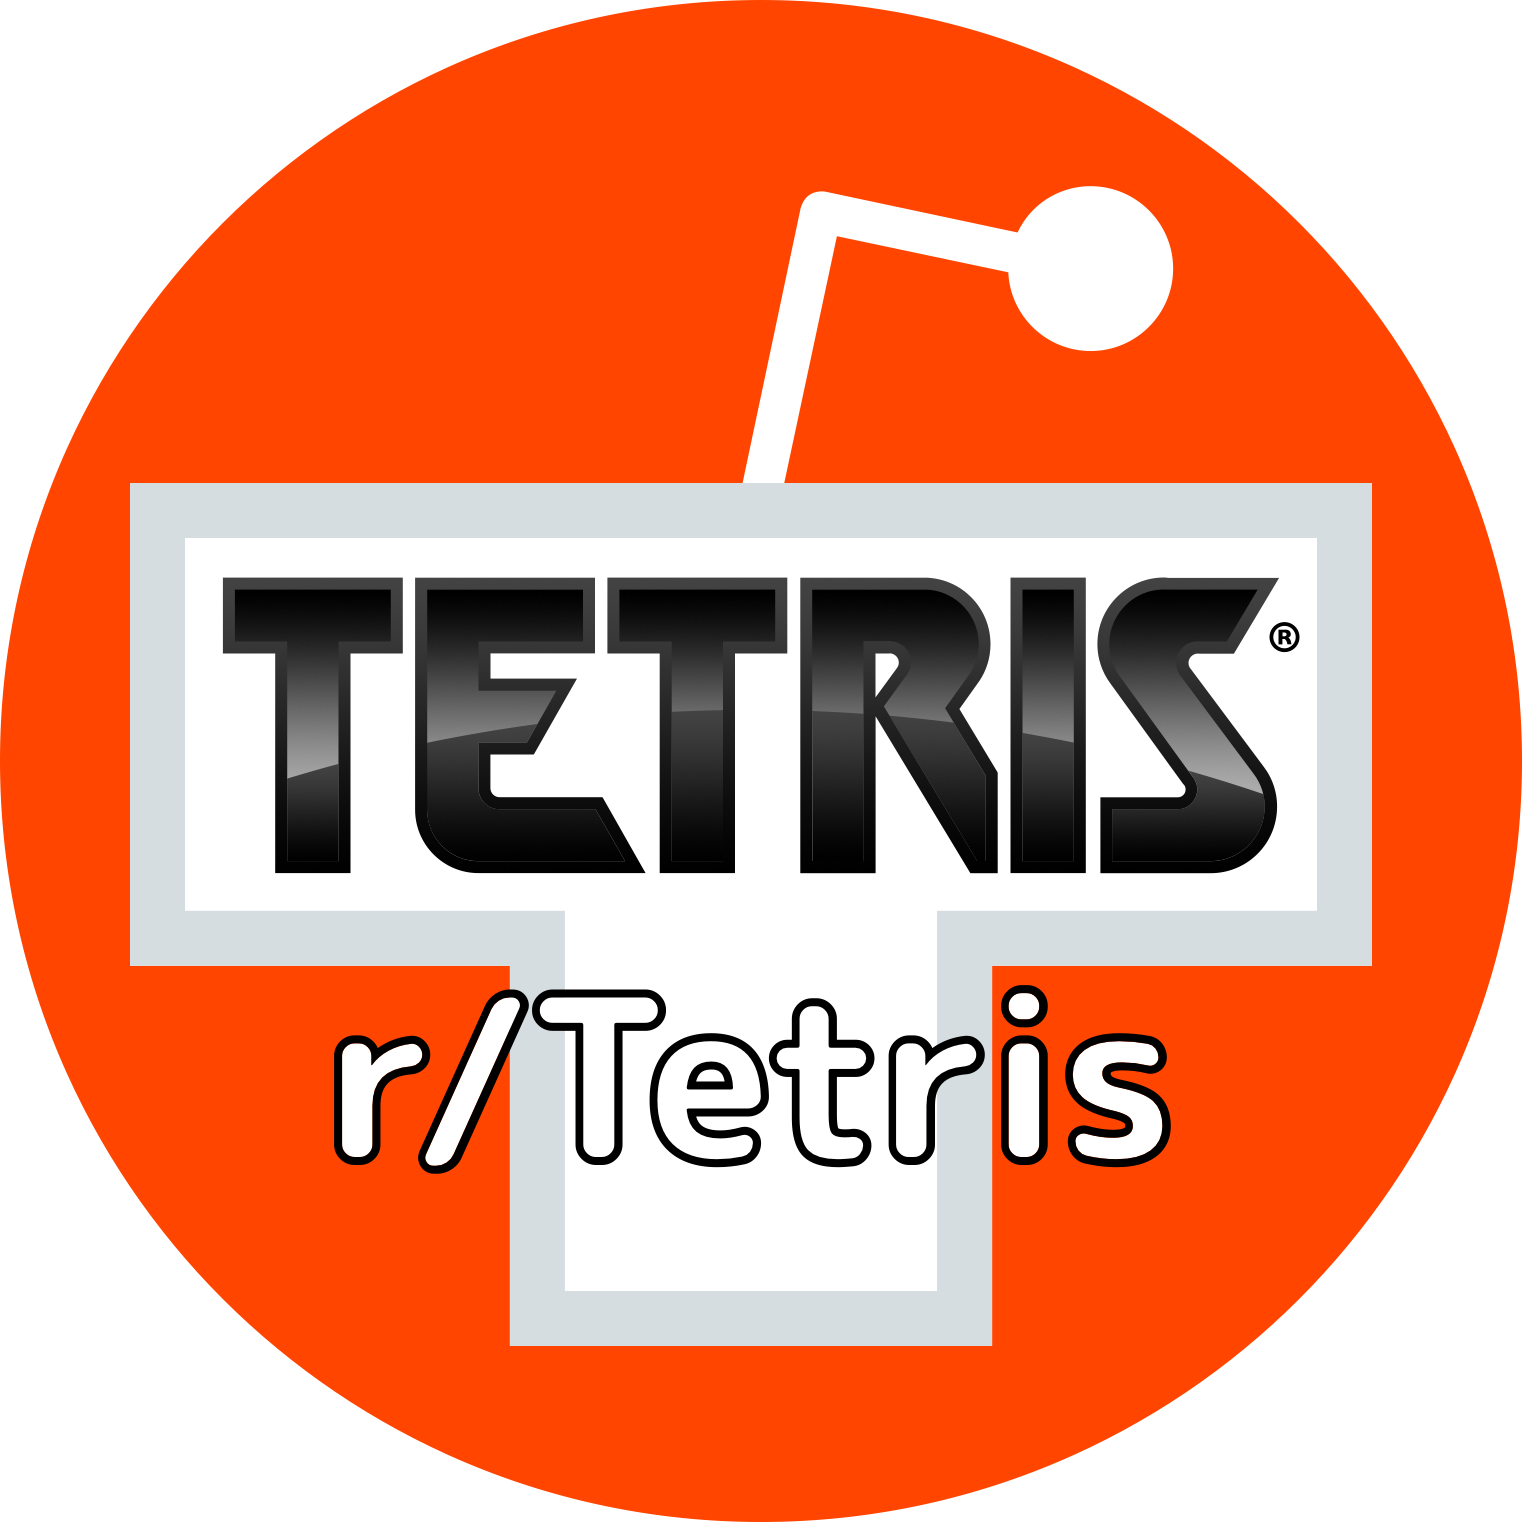 A logo for the reddit subreddit r/Tetris